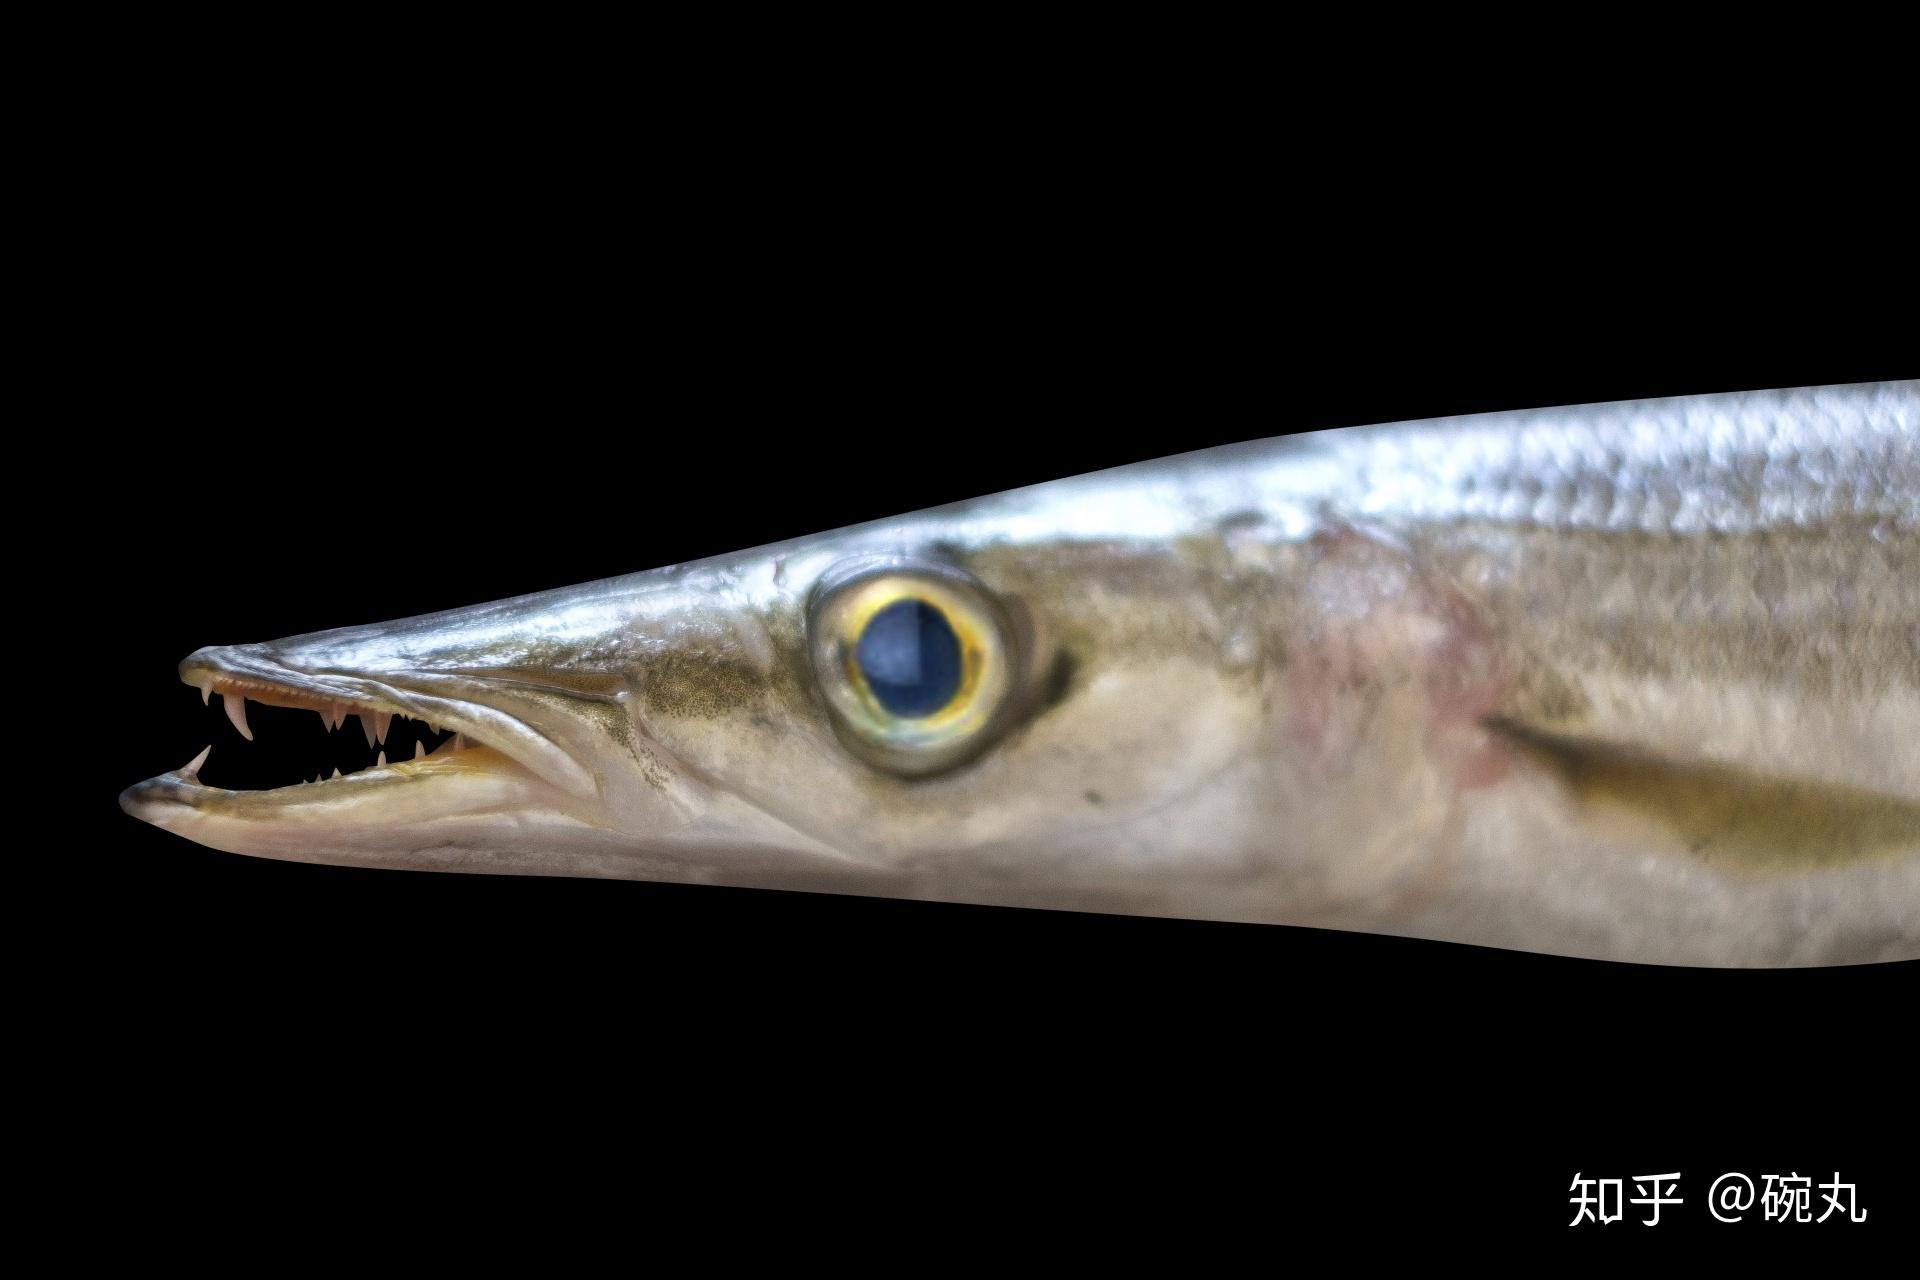 新鲜的redlip梭鱼鱼 库存图片. 图片 包括有 敌意, 空白, 海鲜, 新鲜, 梭鱼, 野生生物, 食物 - 152218793